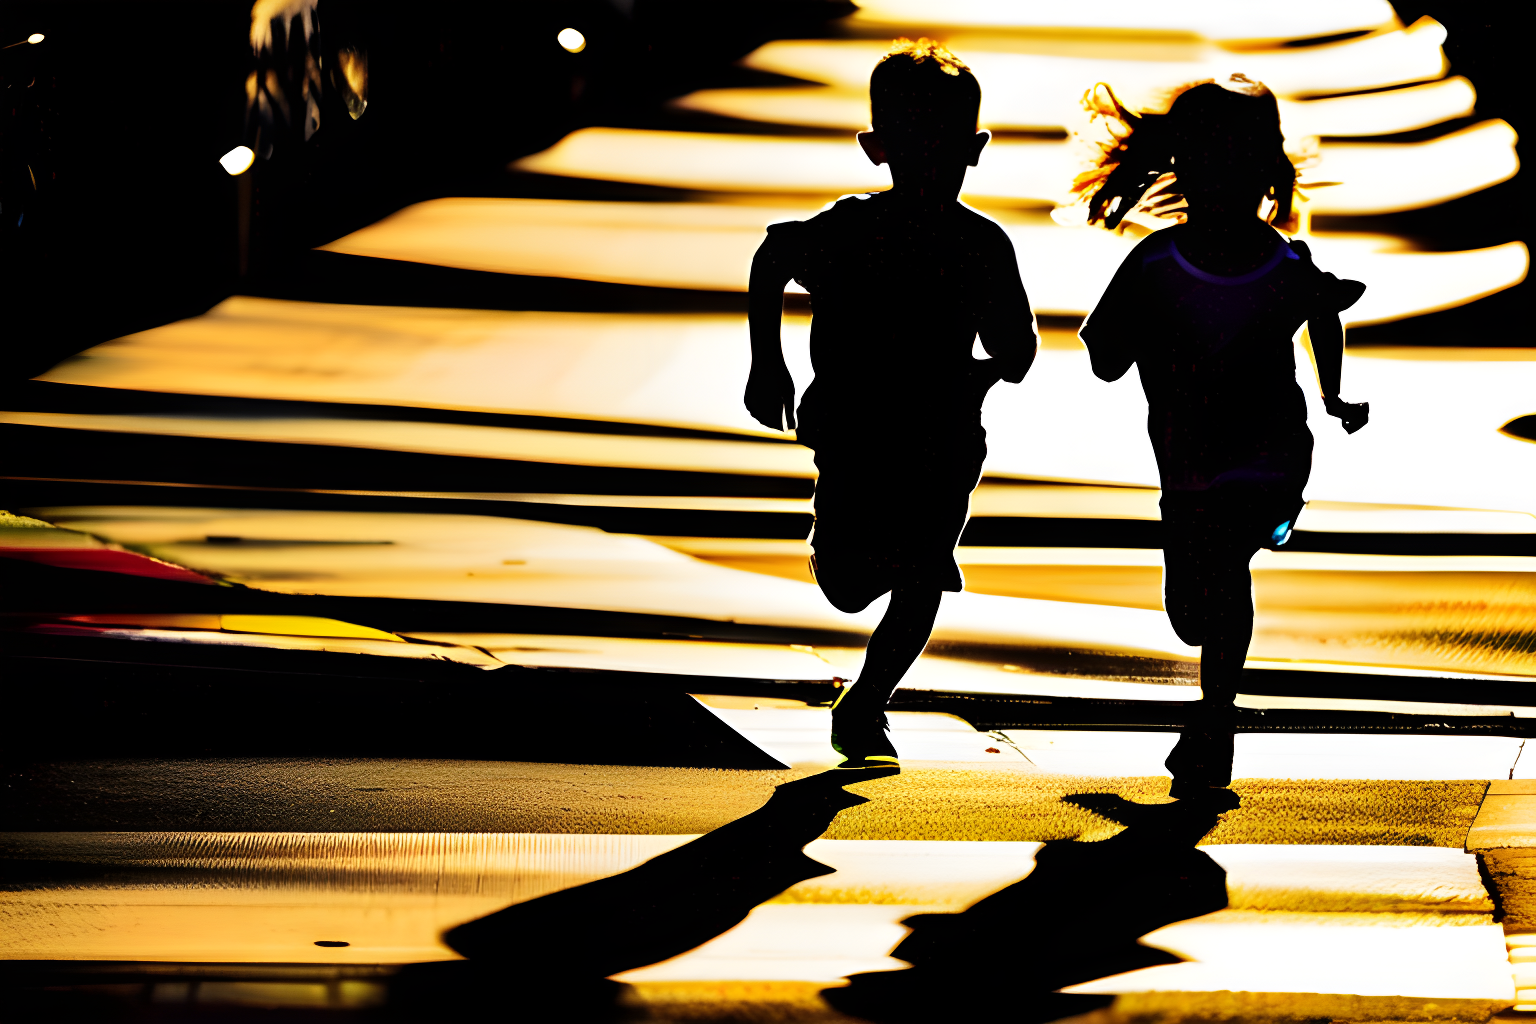 Children running away from a shadow figure